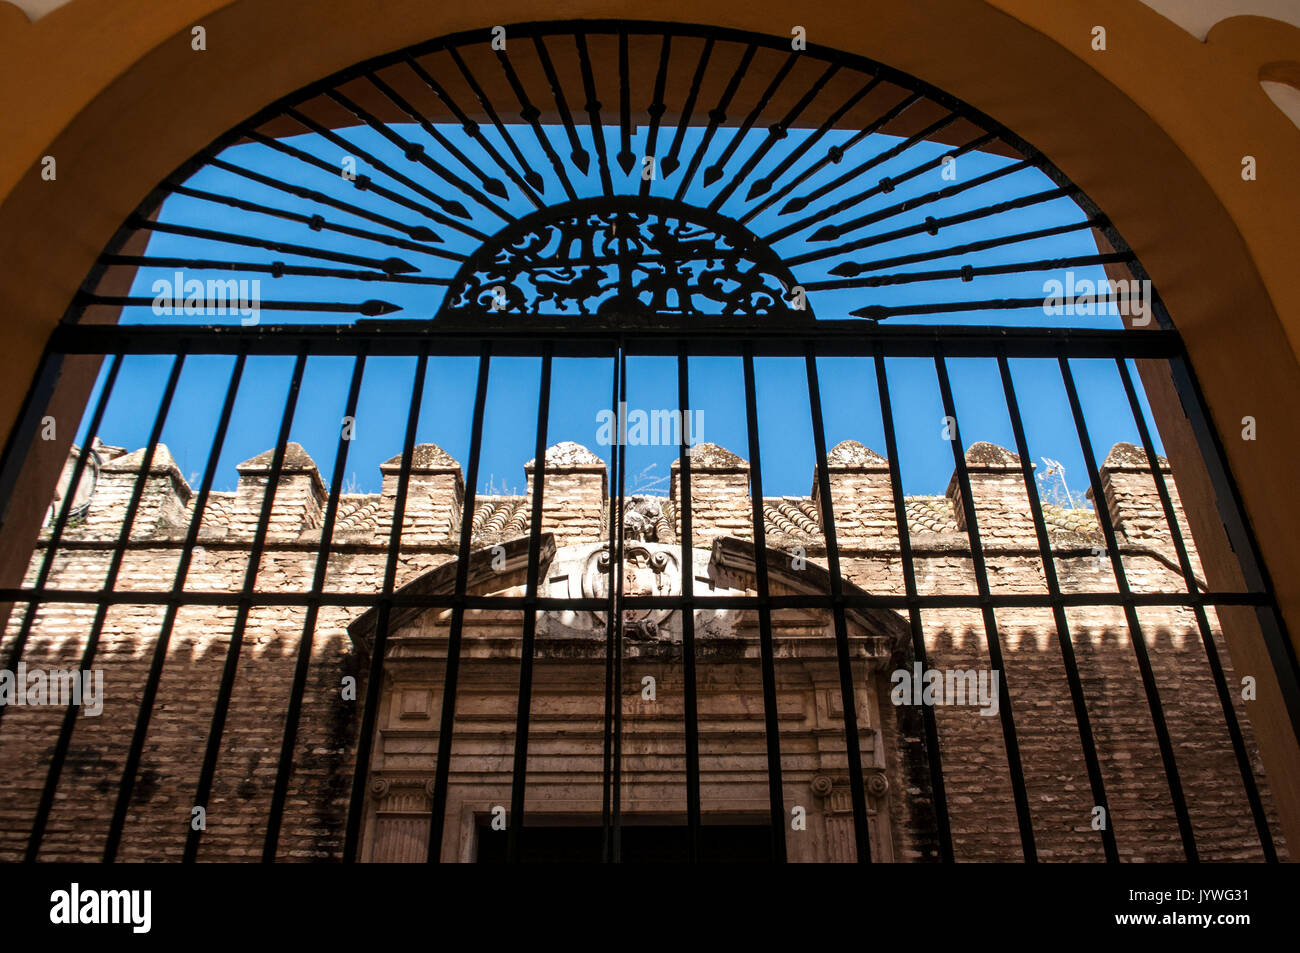 Spanien: Der Patio del Crucero, ein Hof des Alcazar von Sevilla, der königliche Palast Beispiel Mudejar Architektur, von eine Grille gesehen Stockfoto